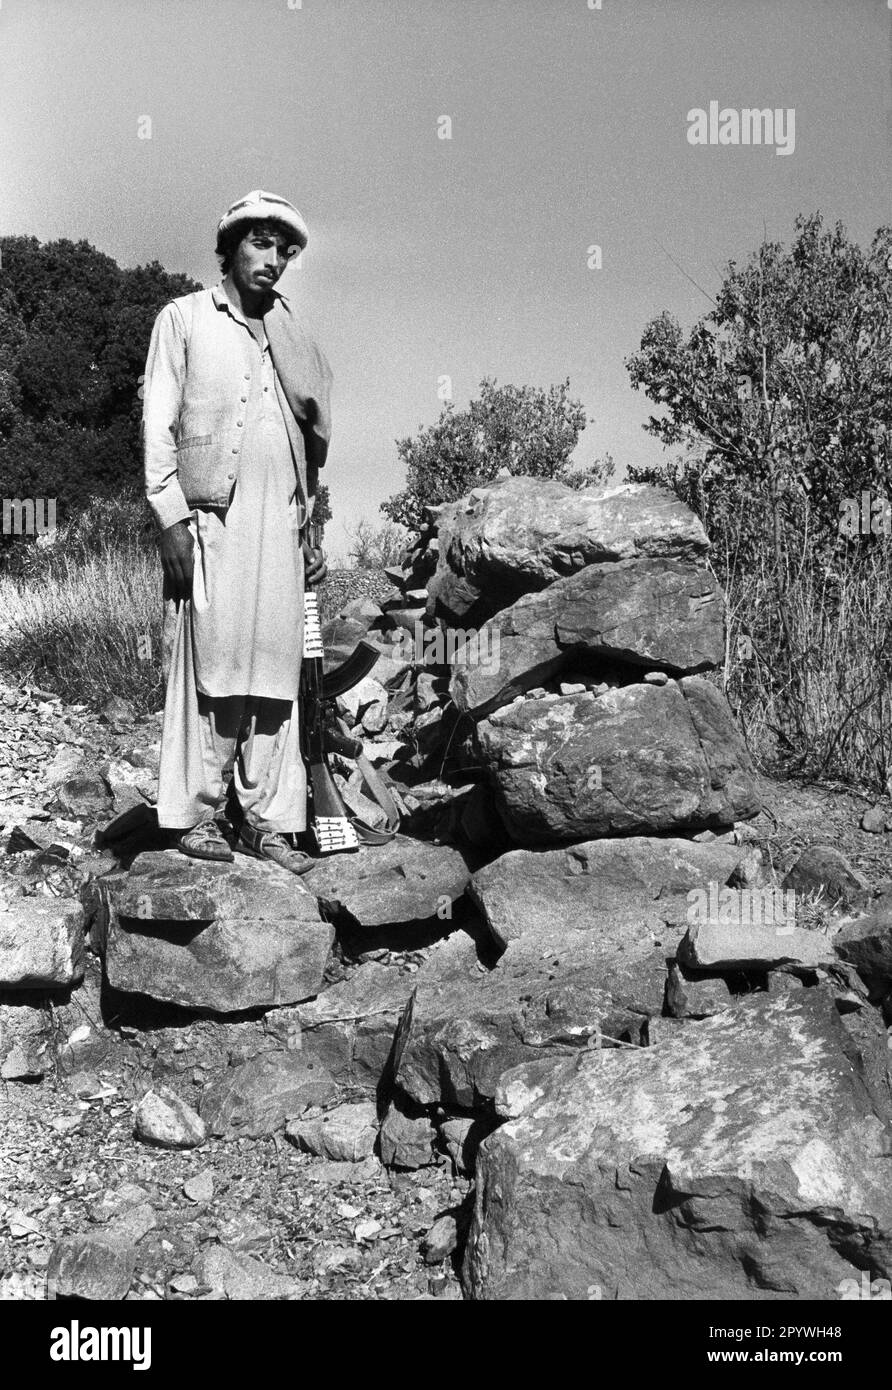 Afghanistan, Miranshah, 24.10.1990. Archiv-Nr.: 21-41-35 Foto: Ein Mudschaheddin-Kämpfer in den Bergen. [Maschinelle Übersetzung] Stockfoto